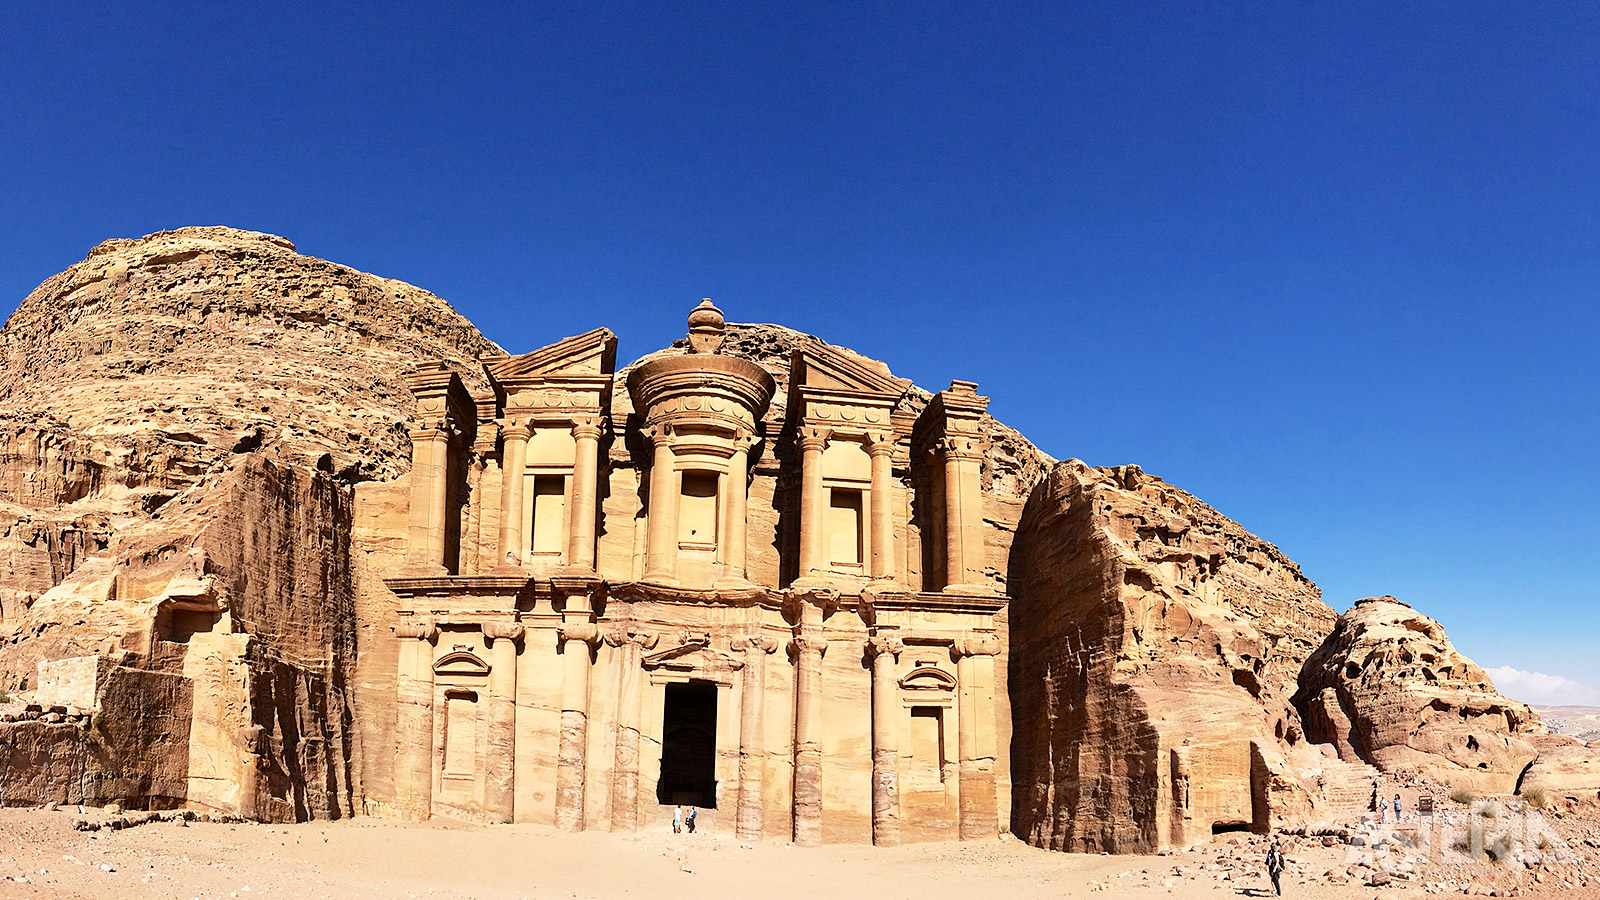 Enkele kilometers ten Noorden van Petra ligt Klein-Petra, ook wel bekend als Siq Al Barid